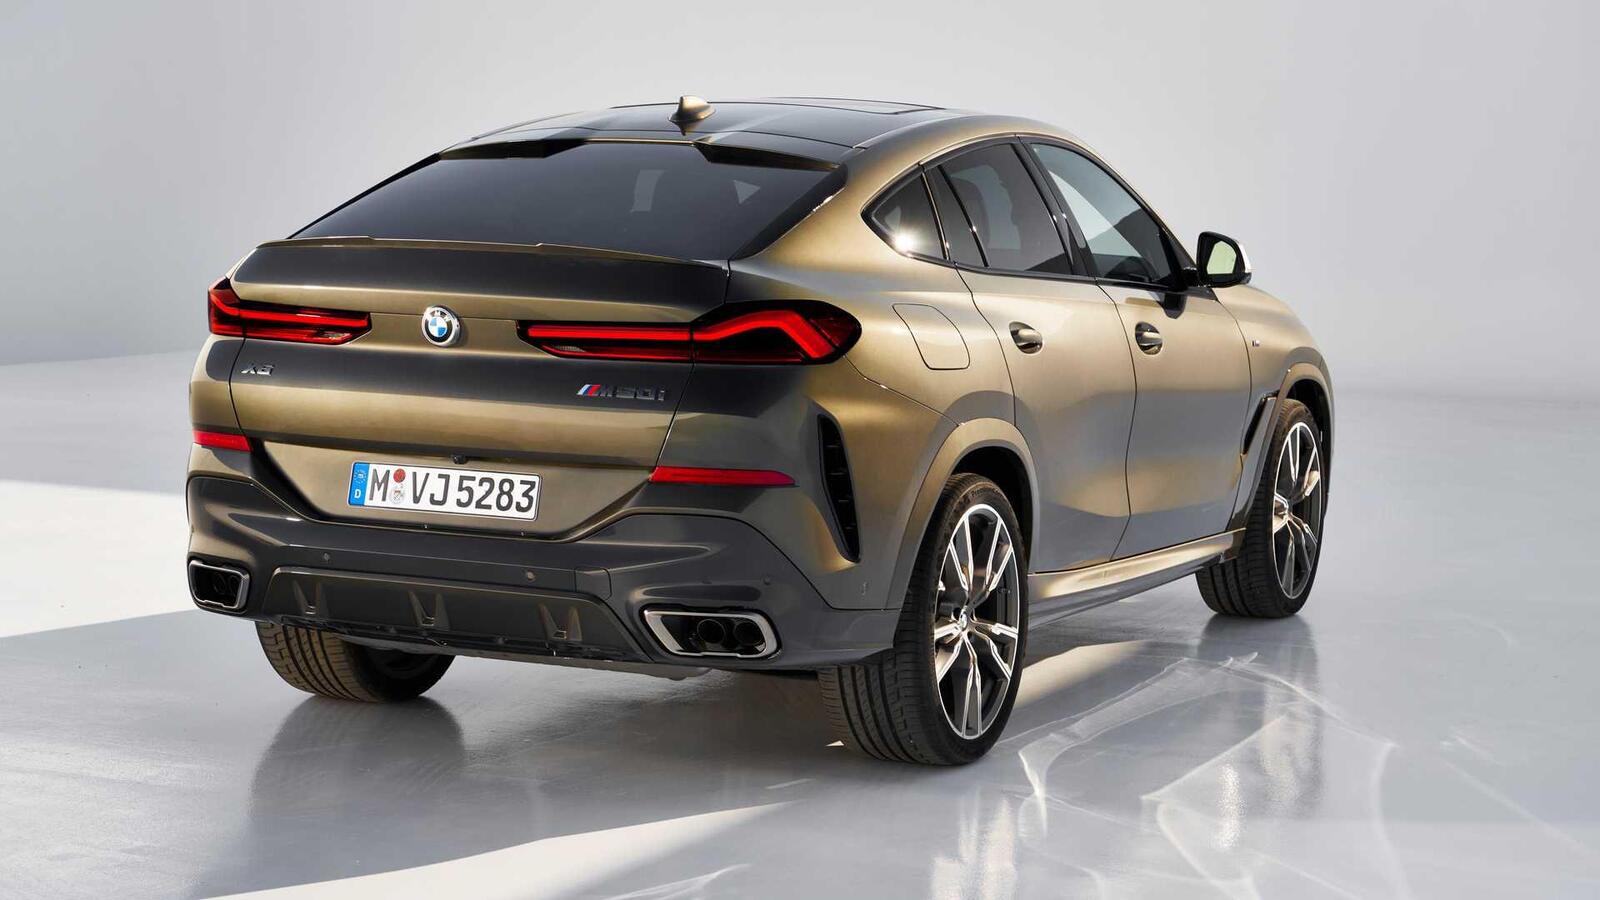 Thế hệ mới BMW X6 2020 chính thức ra mắt - Hình 10